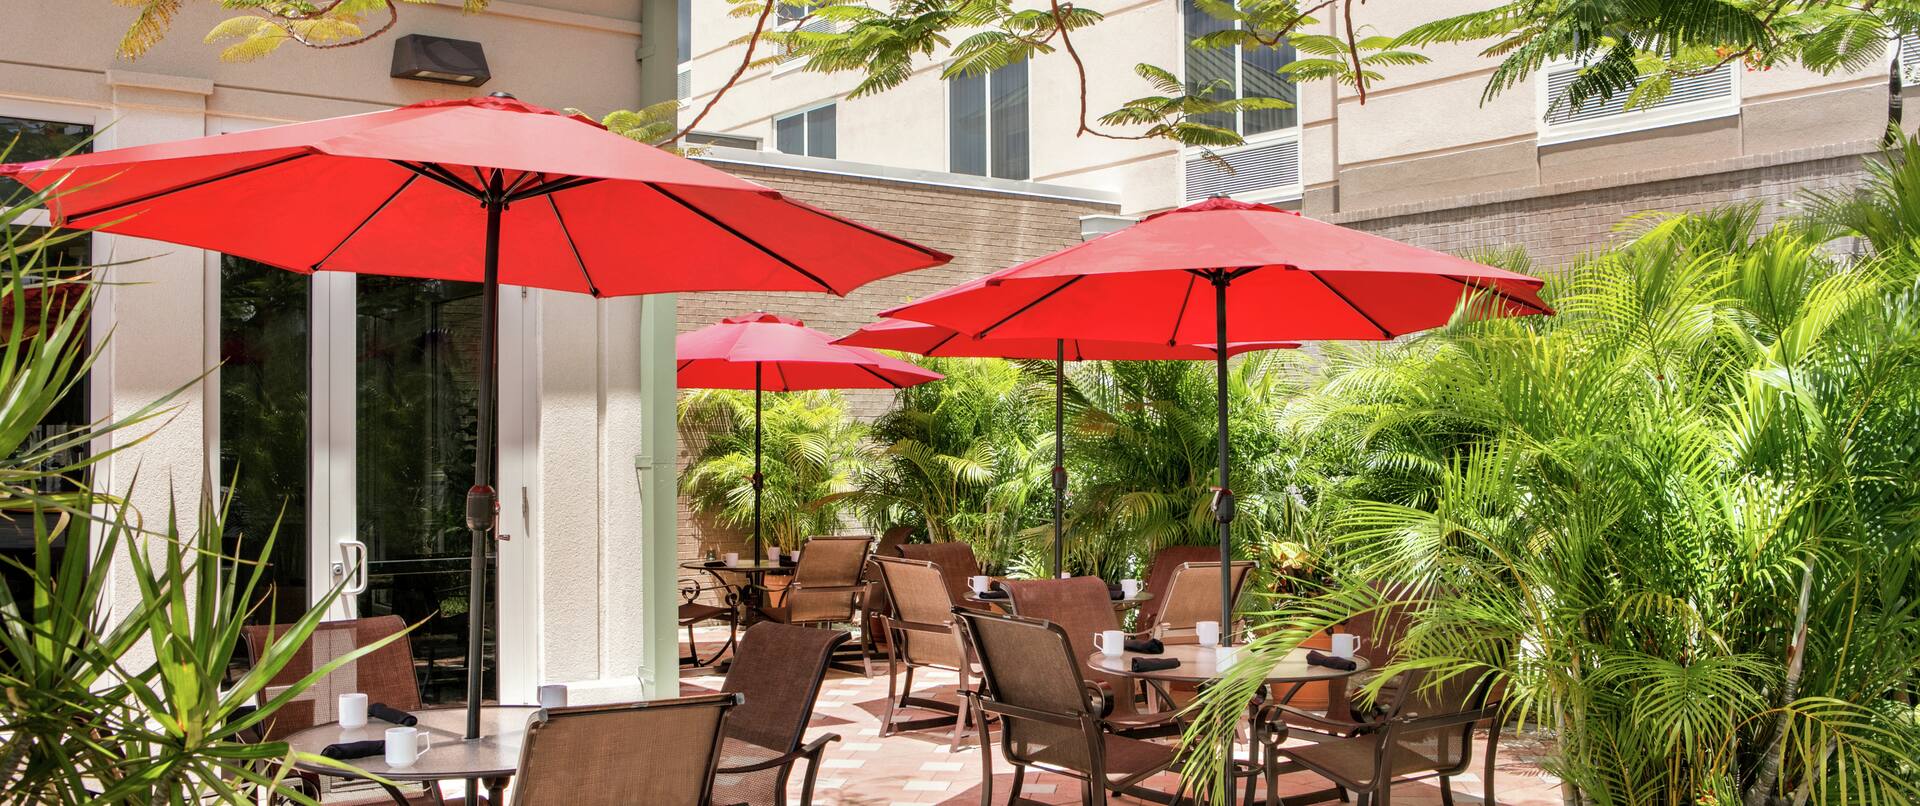 Restaurant Patio Seating with Umbrellas